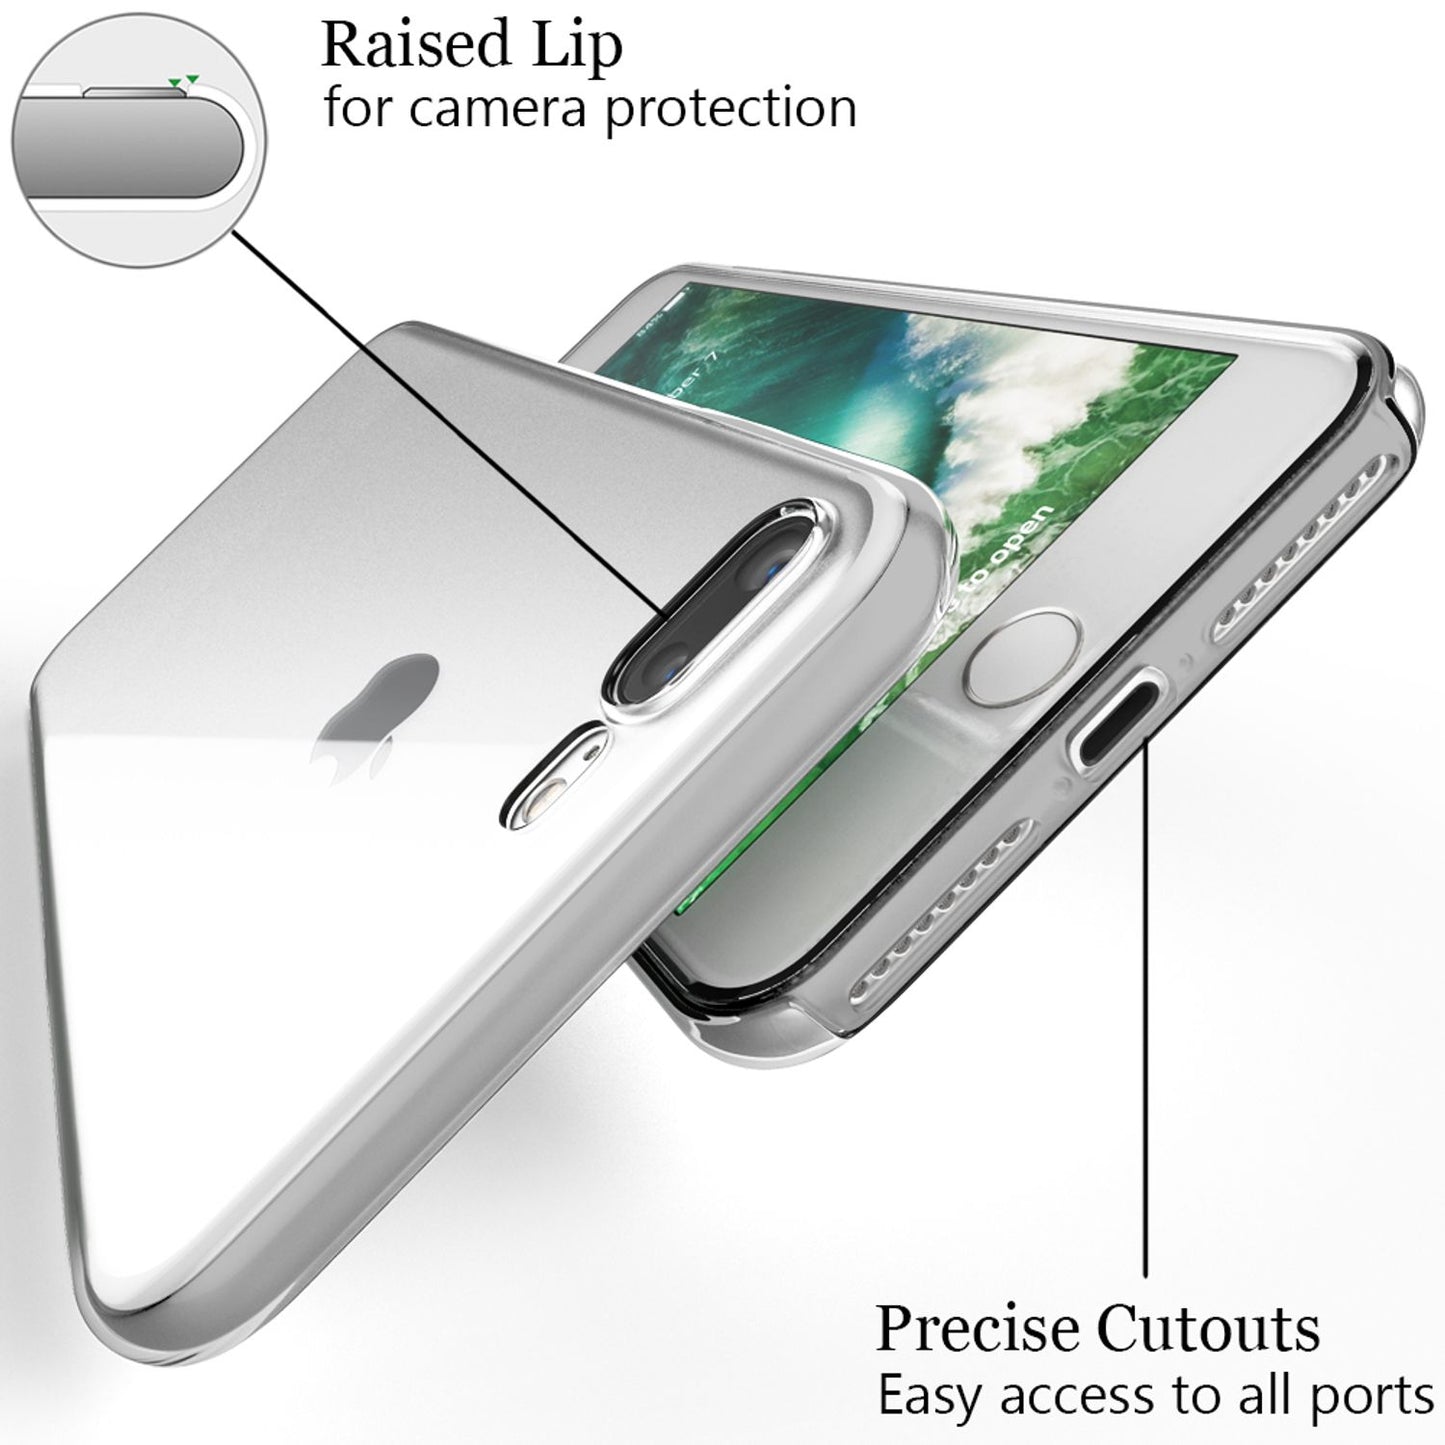 NALIA 360 Grad Handy Hülle für Apple iPhone 8 Plus / 7 Plus, Full Cover Case